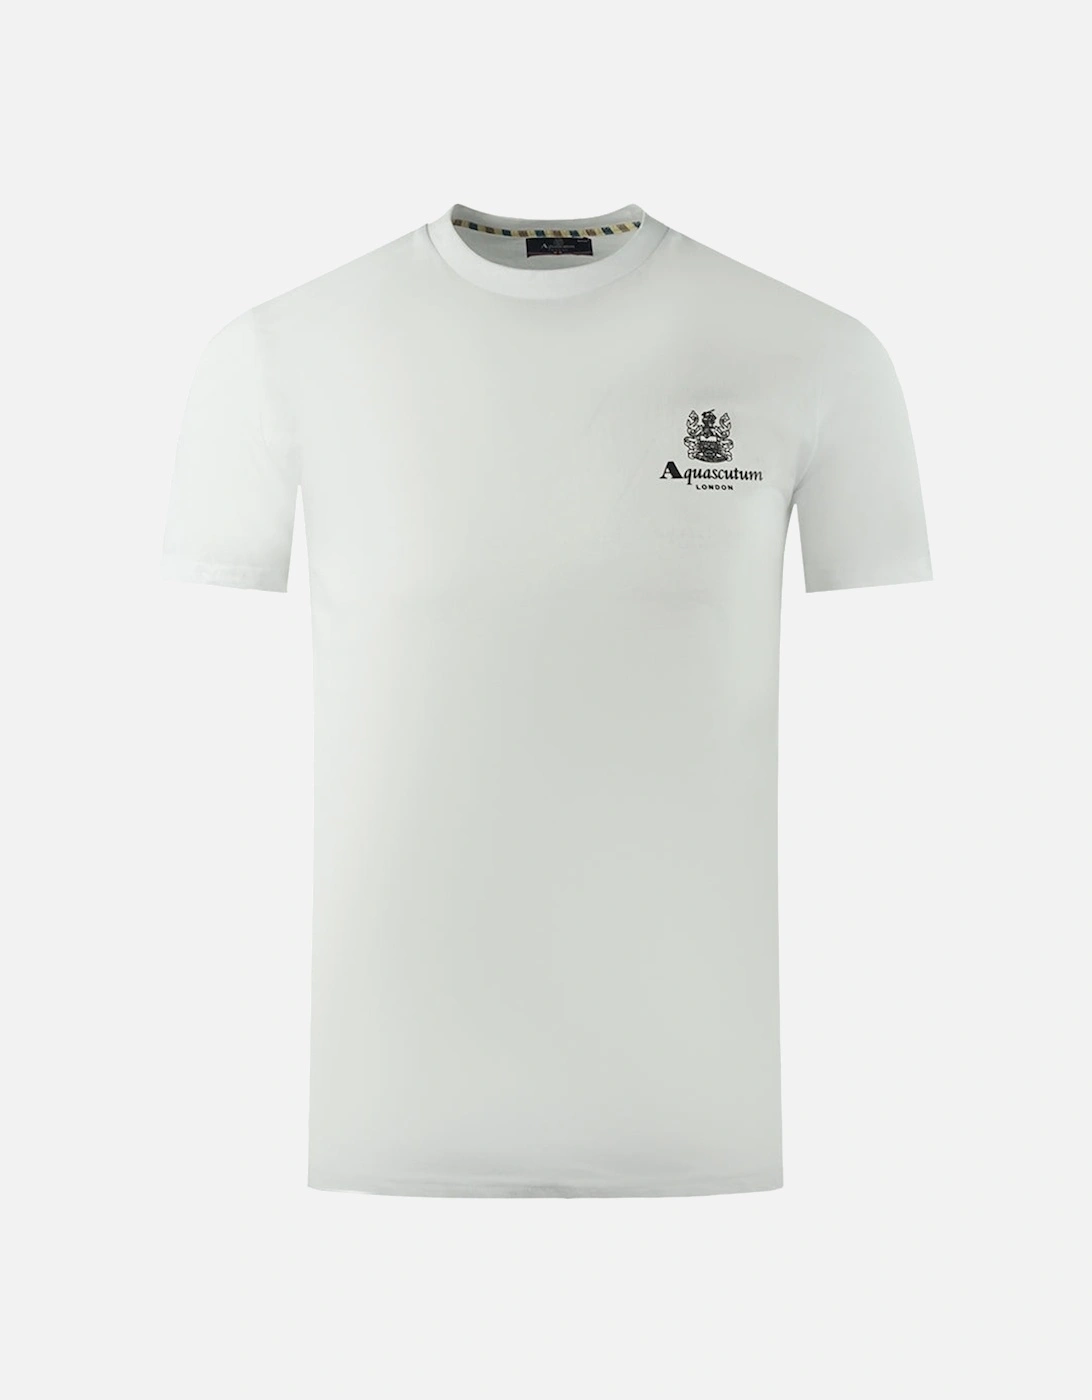 London Aldis Brand Logo On Chest White T-Shirt, 3 of 2